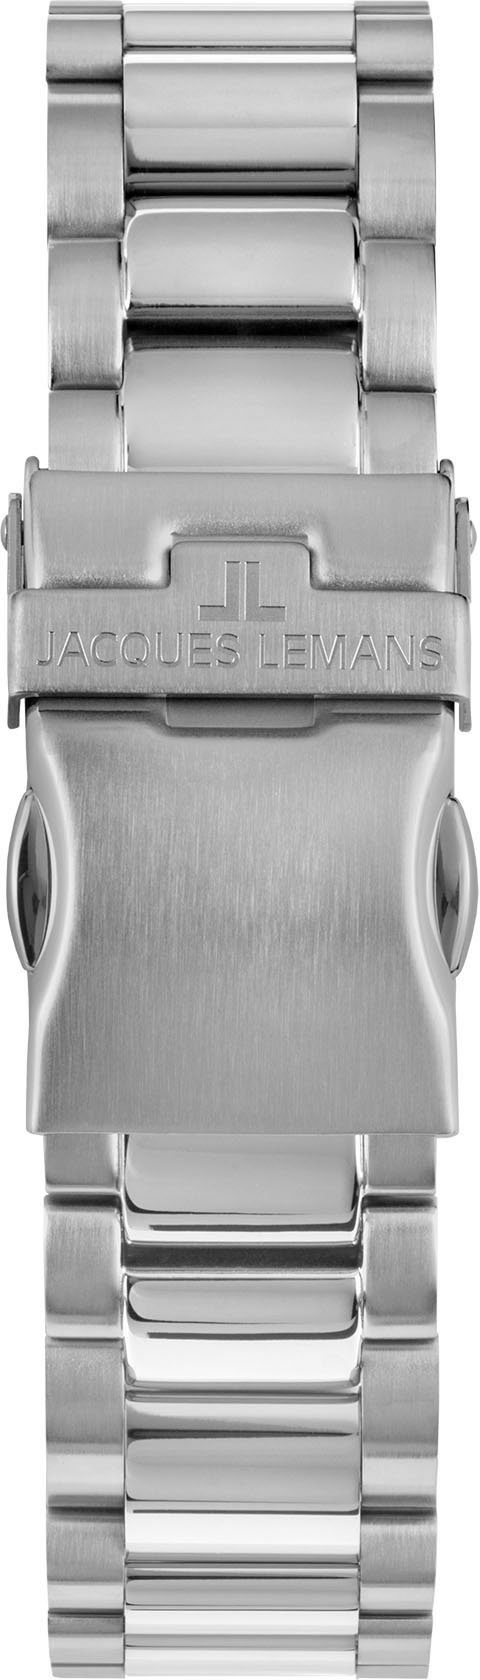 1-2140K Lemans Jacques Liverpool, Chronograph